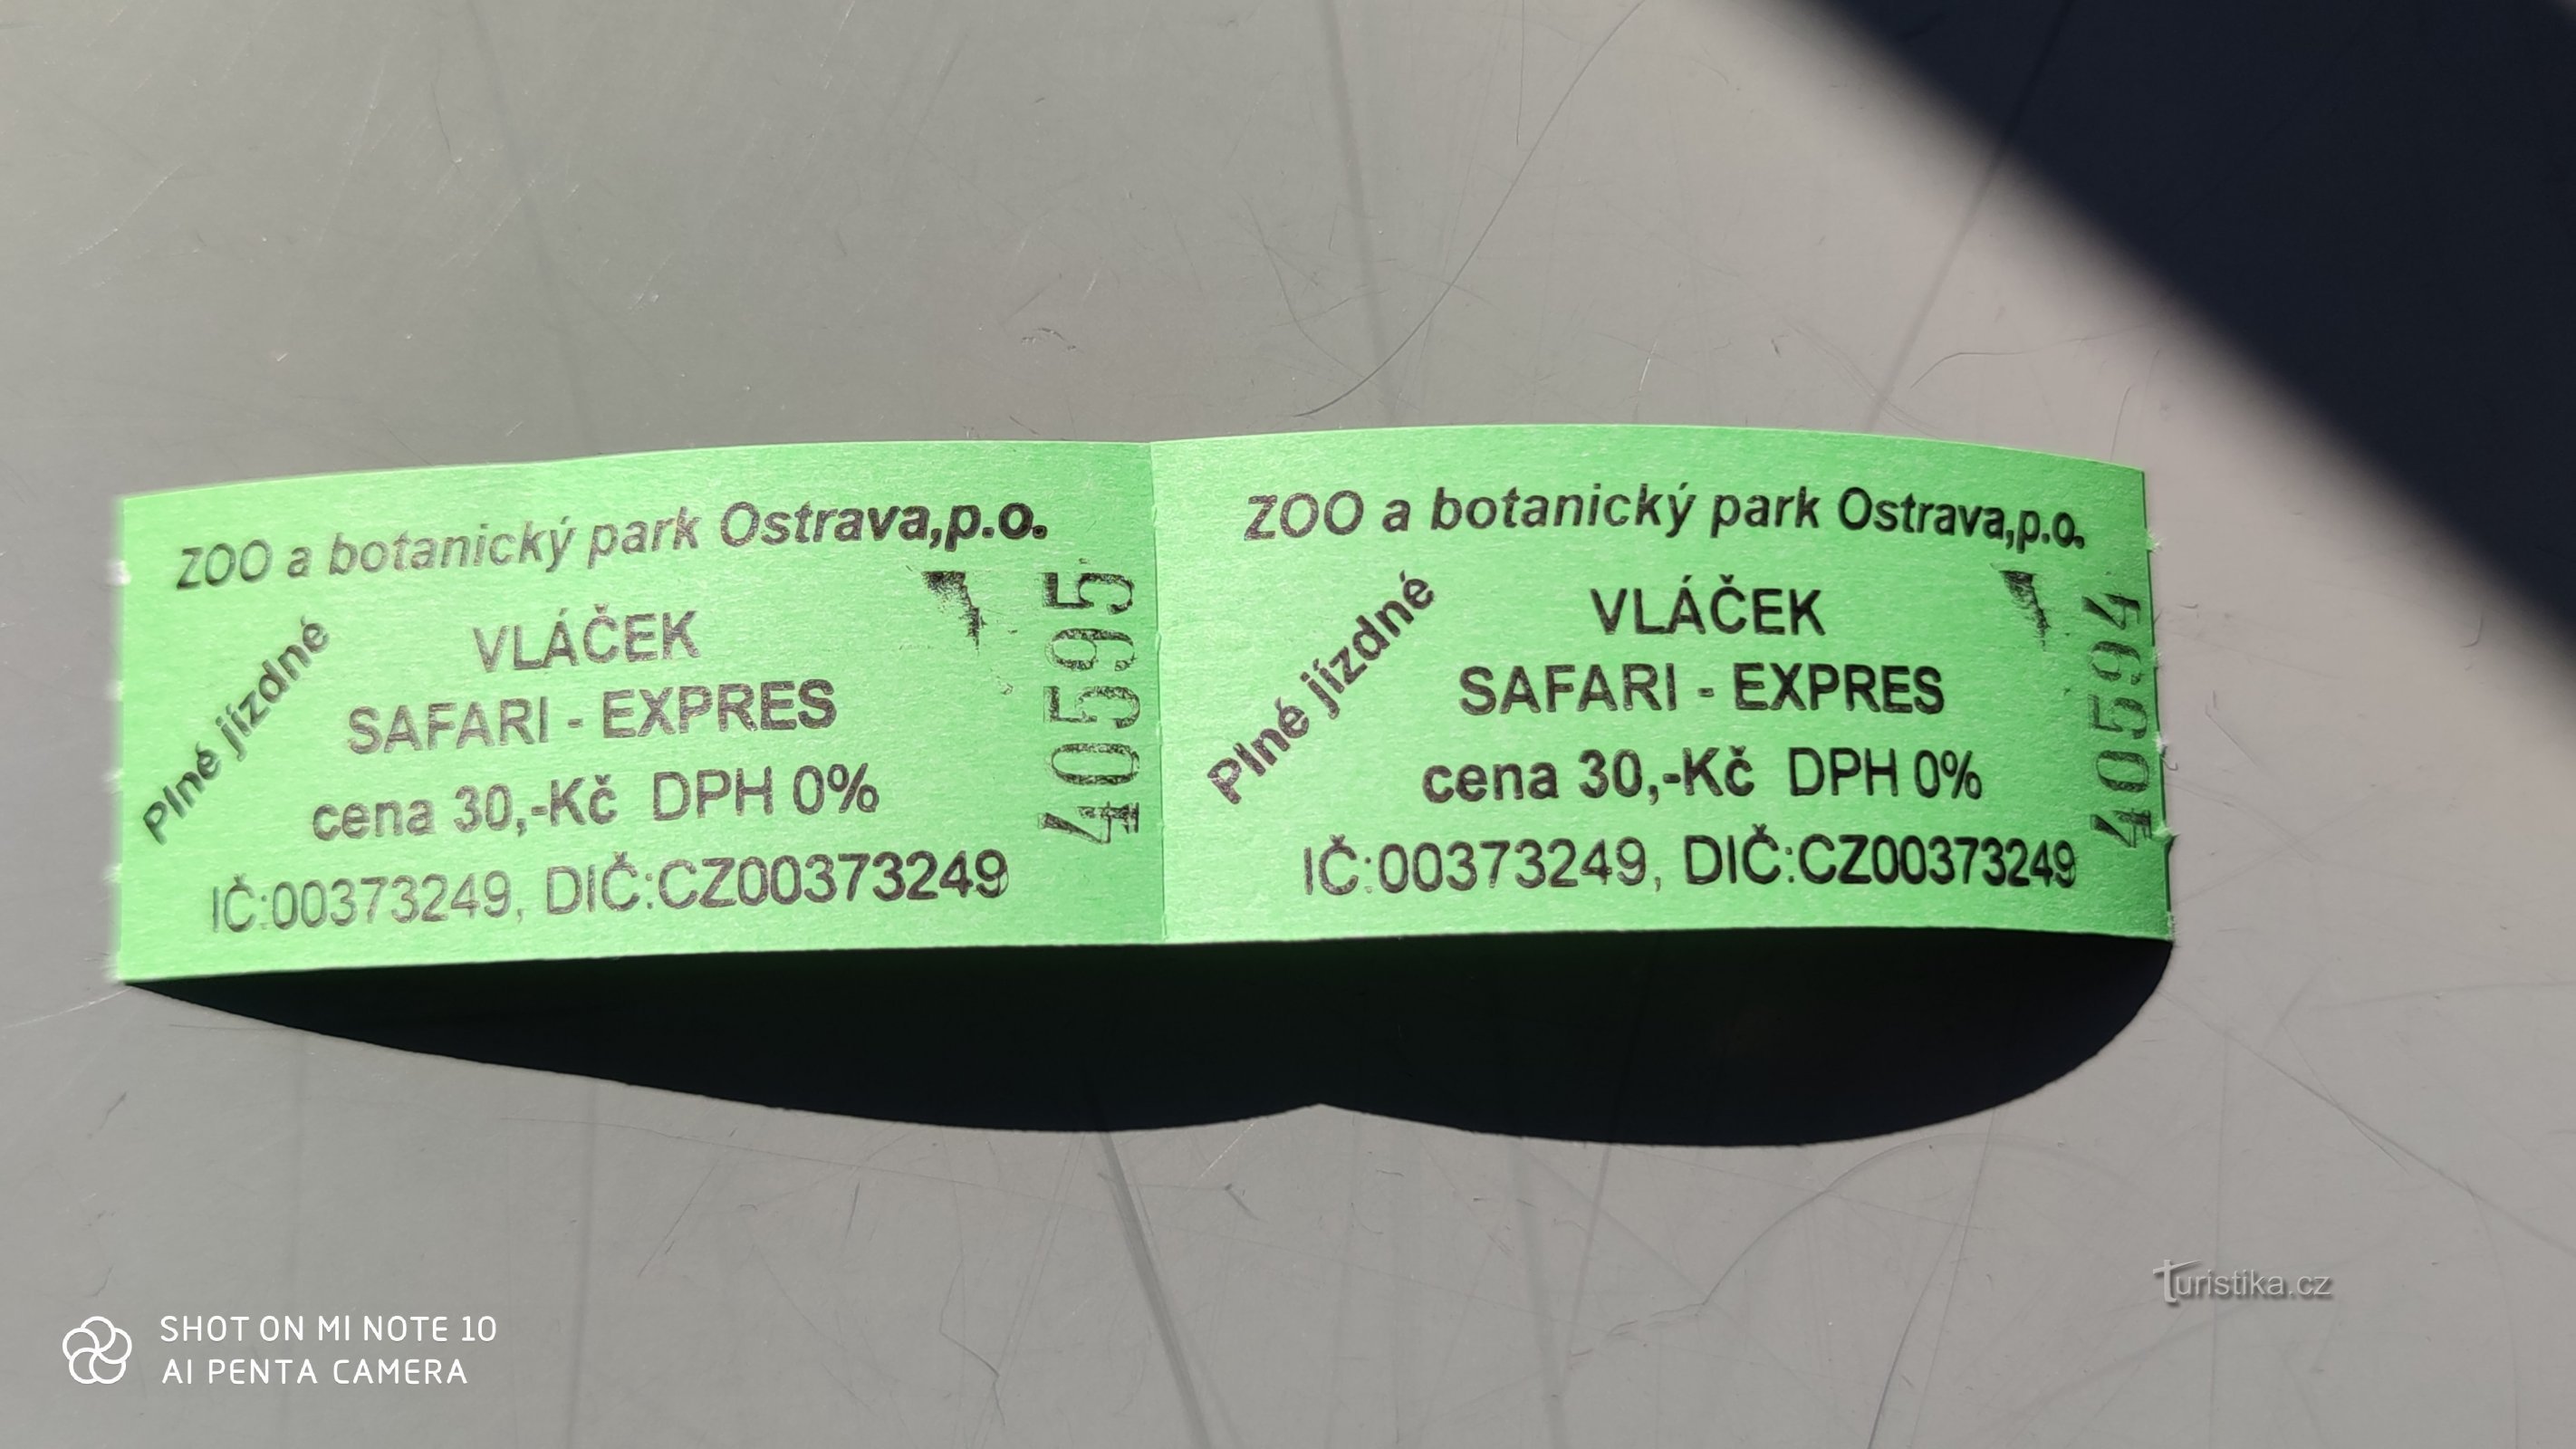 Сафари-экспресс в Зоопарке Остравы